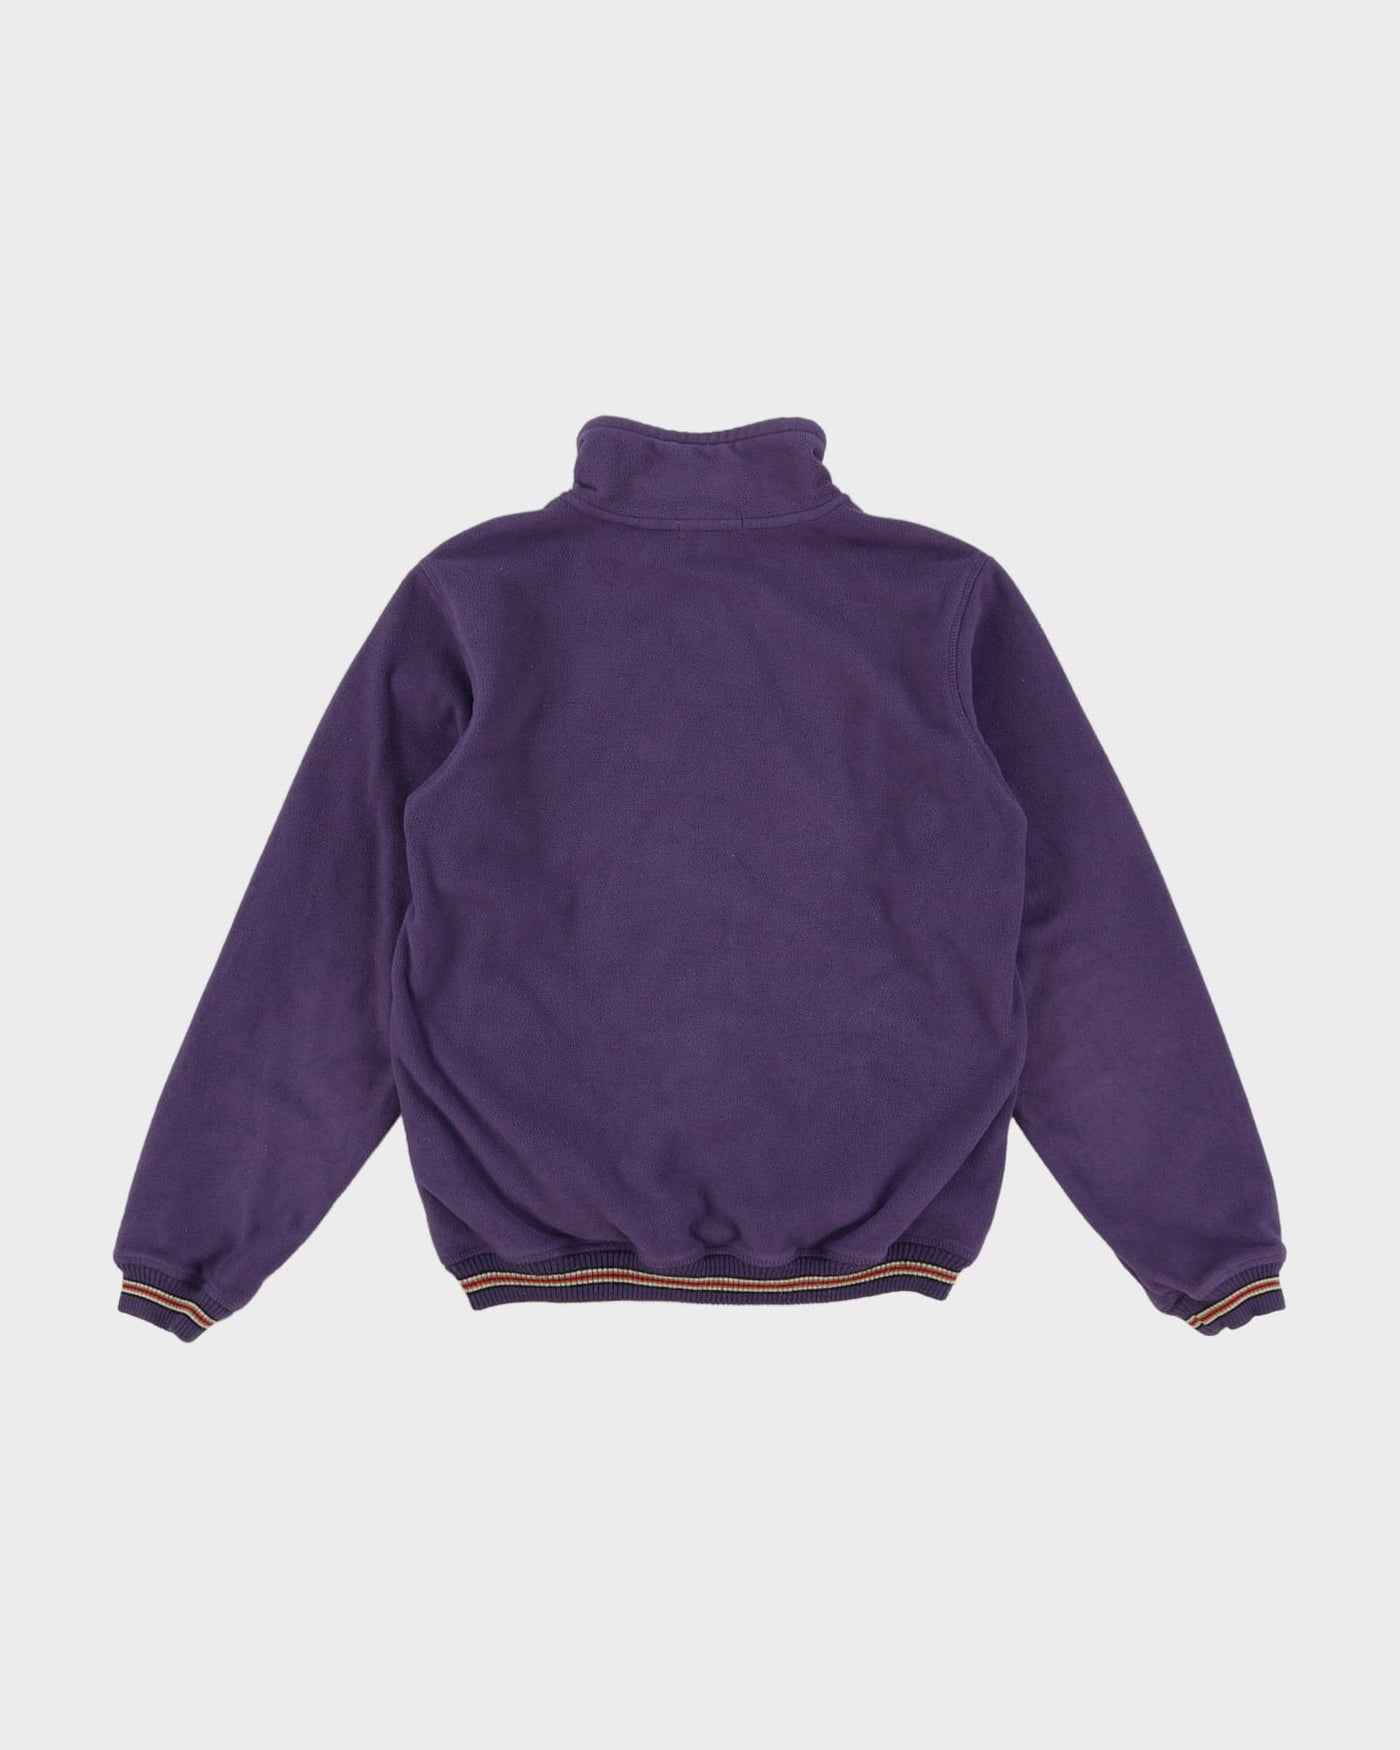 Burberry Purple Full-Zip Fleece - M